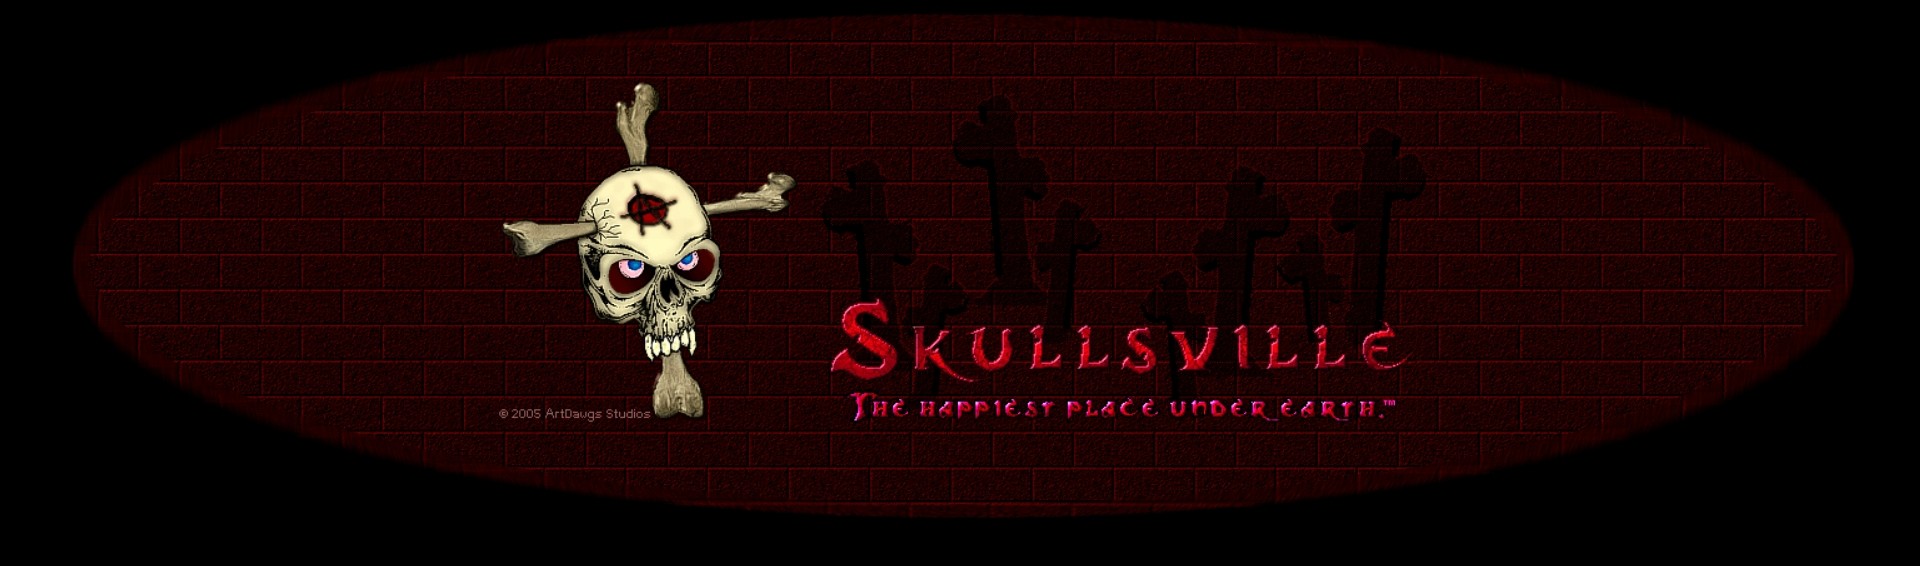 skullsvilleusa skull beads